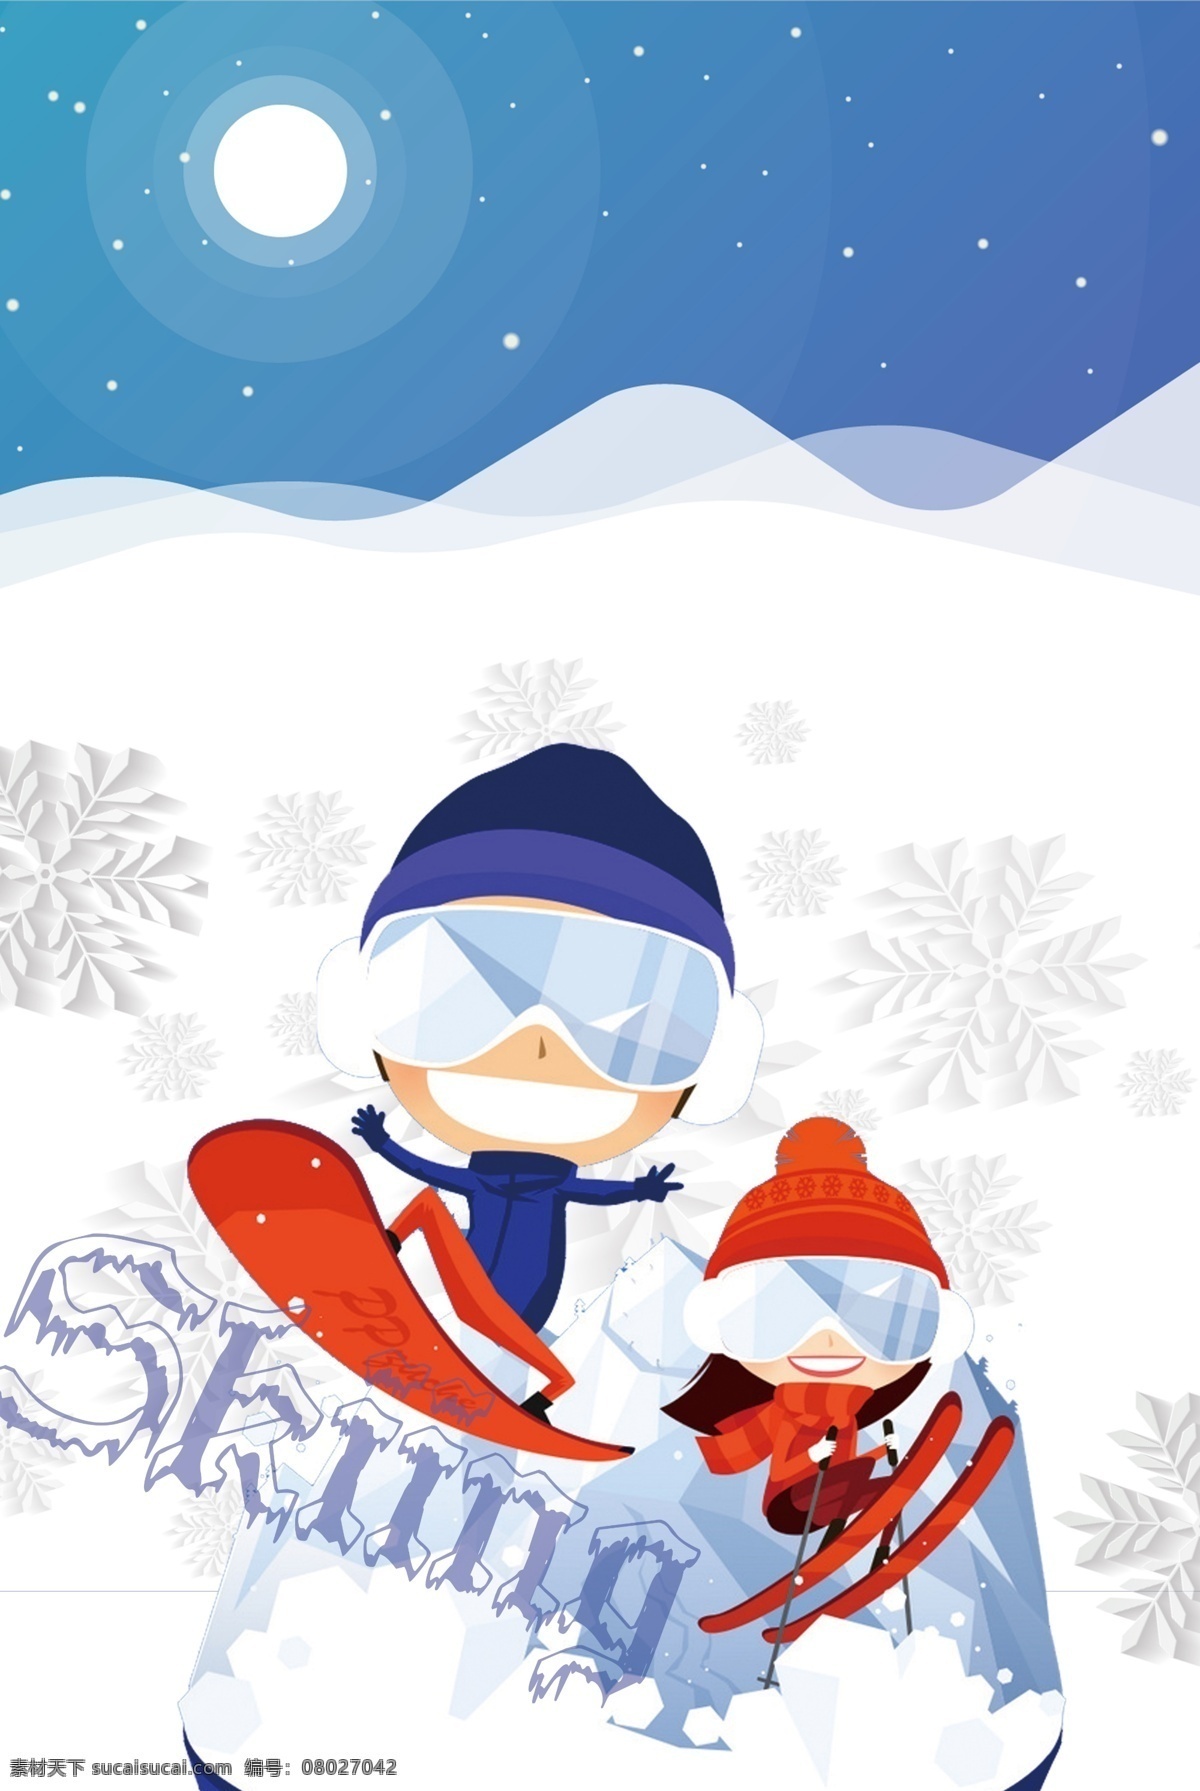 冬季 滑雪 比赛 主题 背景 冬季素材 psd背景 活动背景 旅游 冰雪背景 激情滑雪 滑雪比赛 滑雪活动背景 滑雪展板 滑雪素材